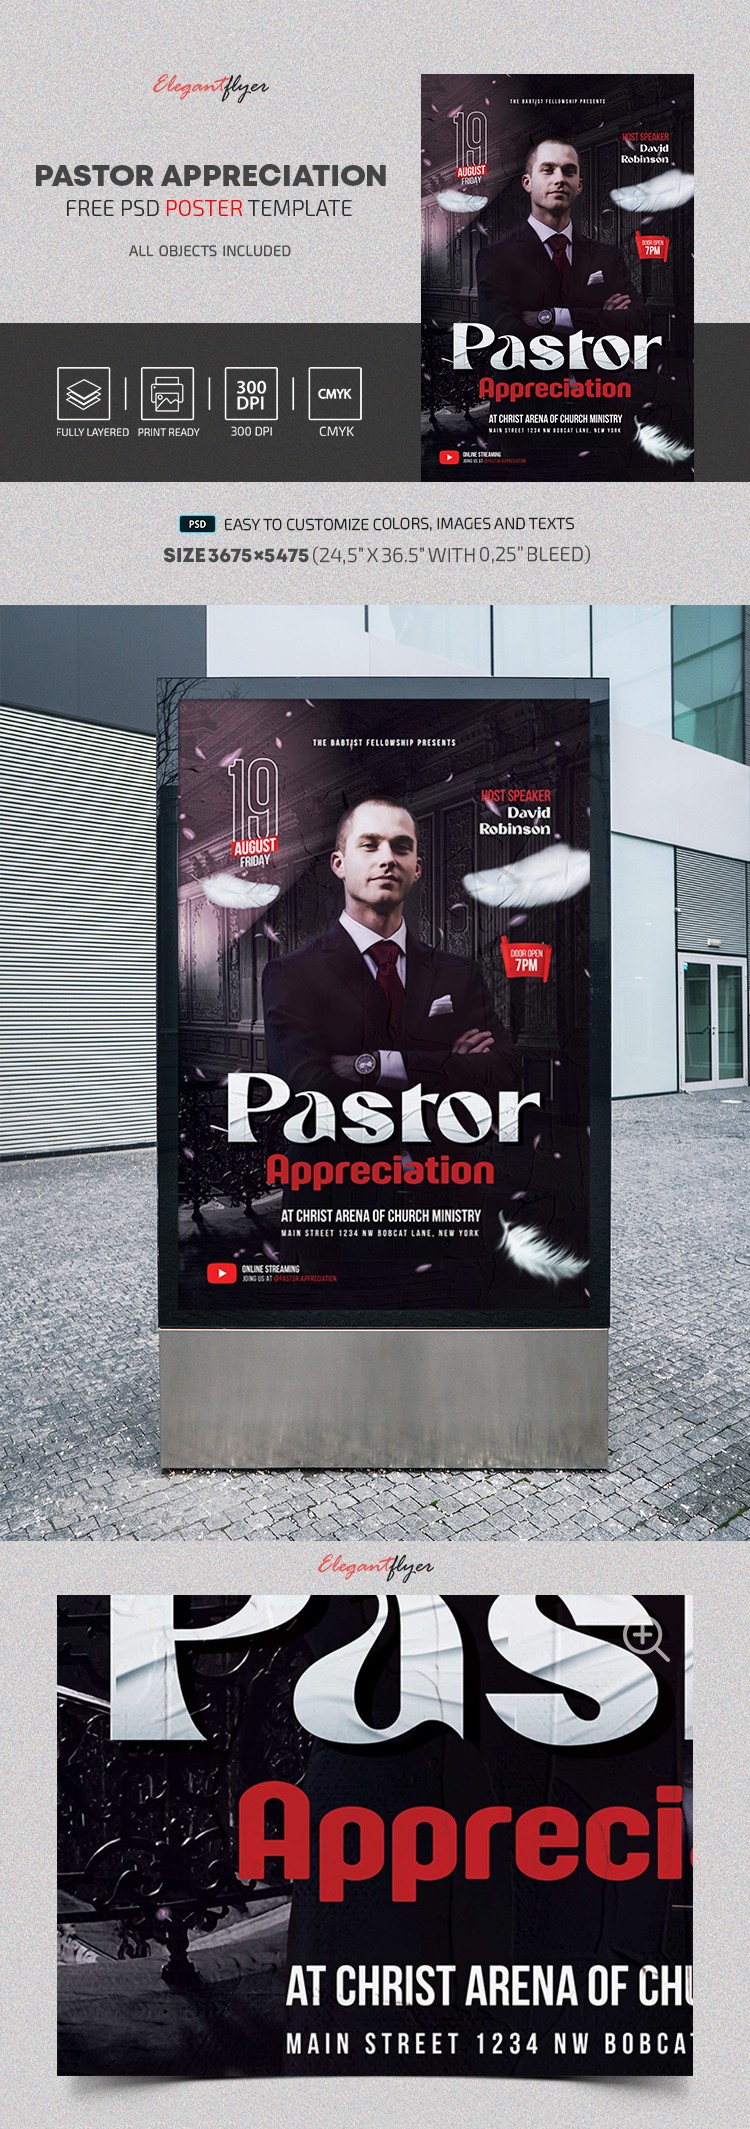 Pastor Appreciation Poster by ElegantFlyer